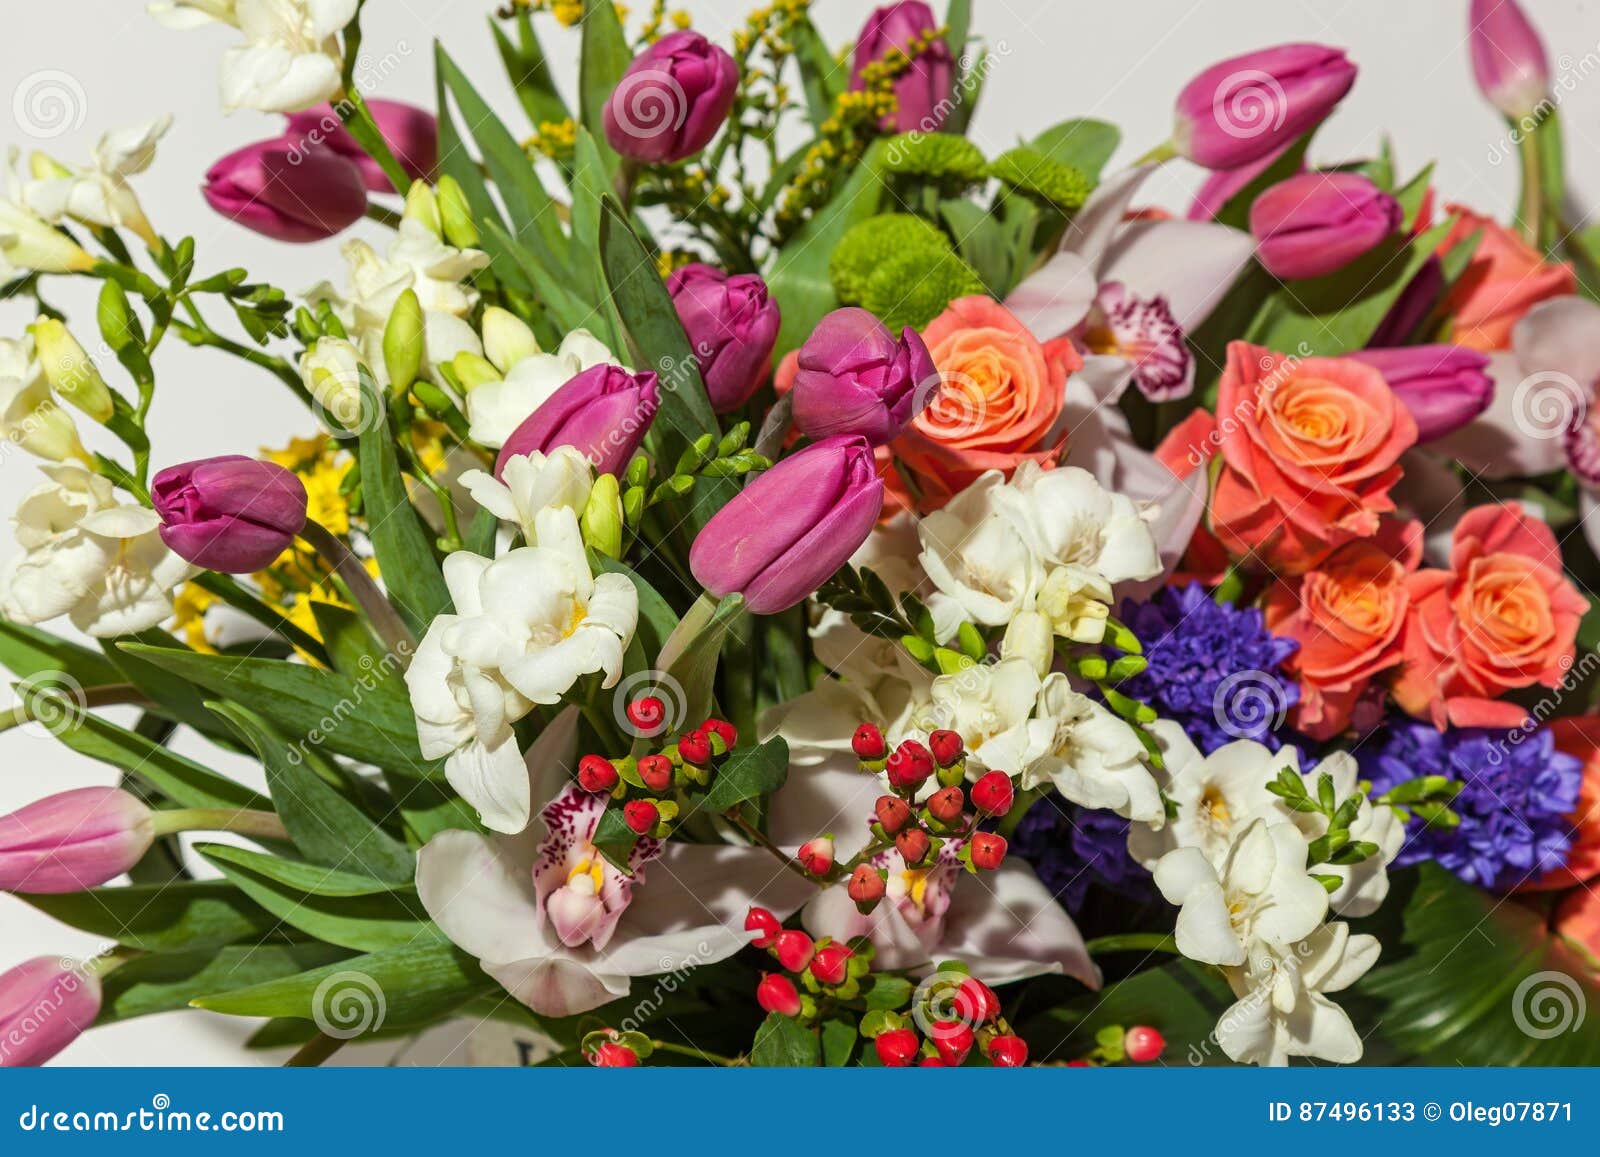 Rosas e orquídeas imagem de stock. Imagem de tiro, retrato - 87496133